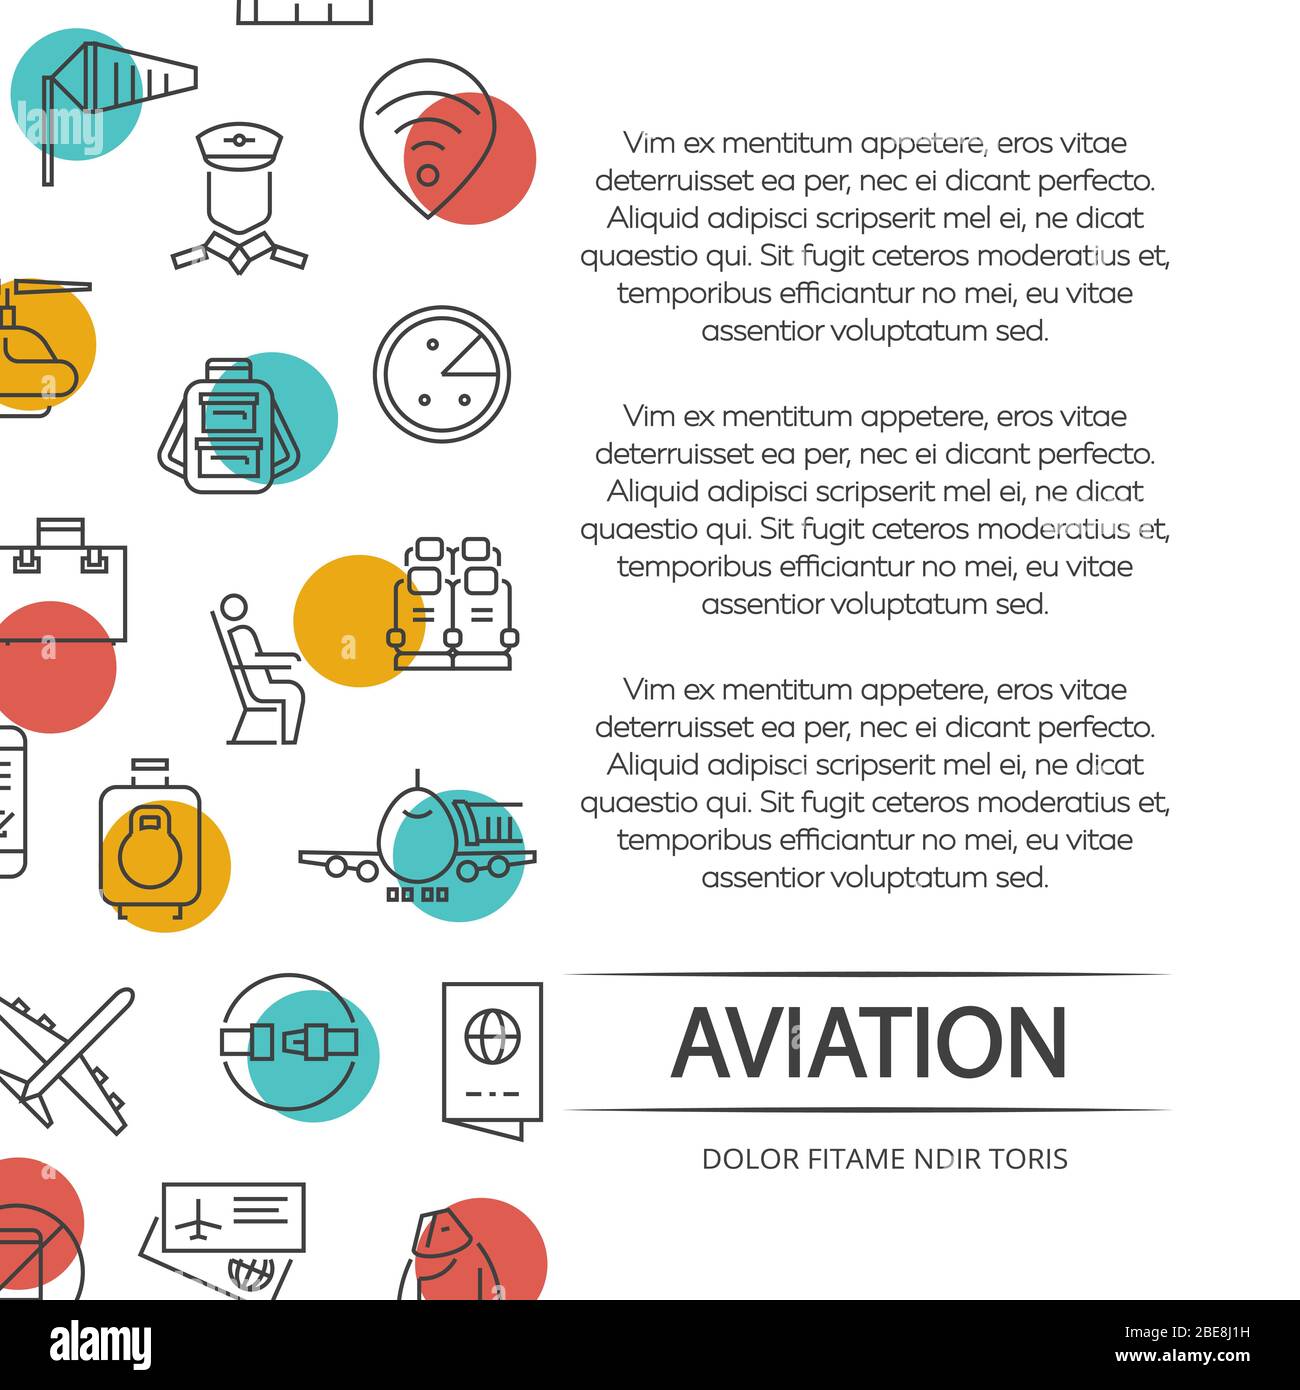 Concetto di poster per l'aviazione con icone e elementi colorati. Illustrazione vettoriale Illustrazione Vettoriale